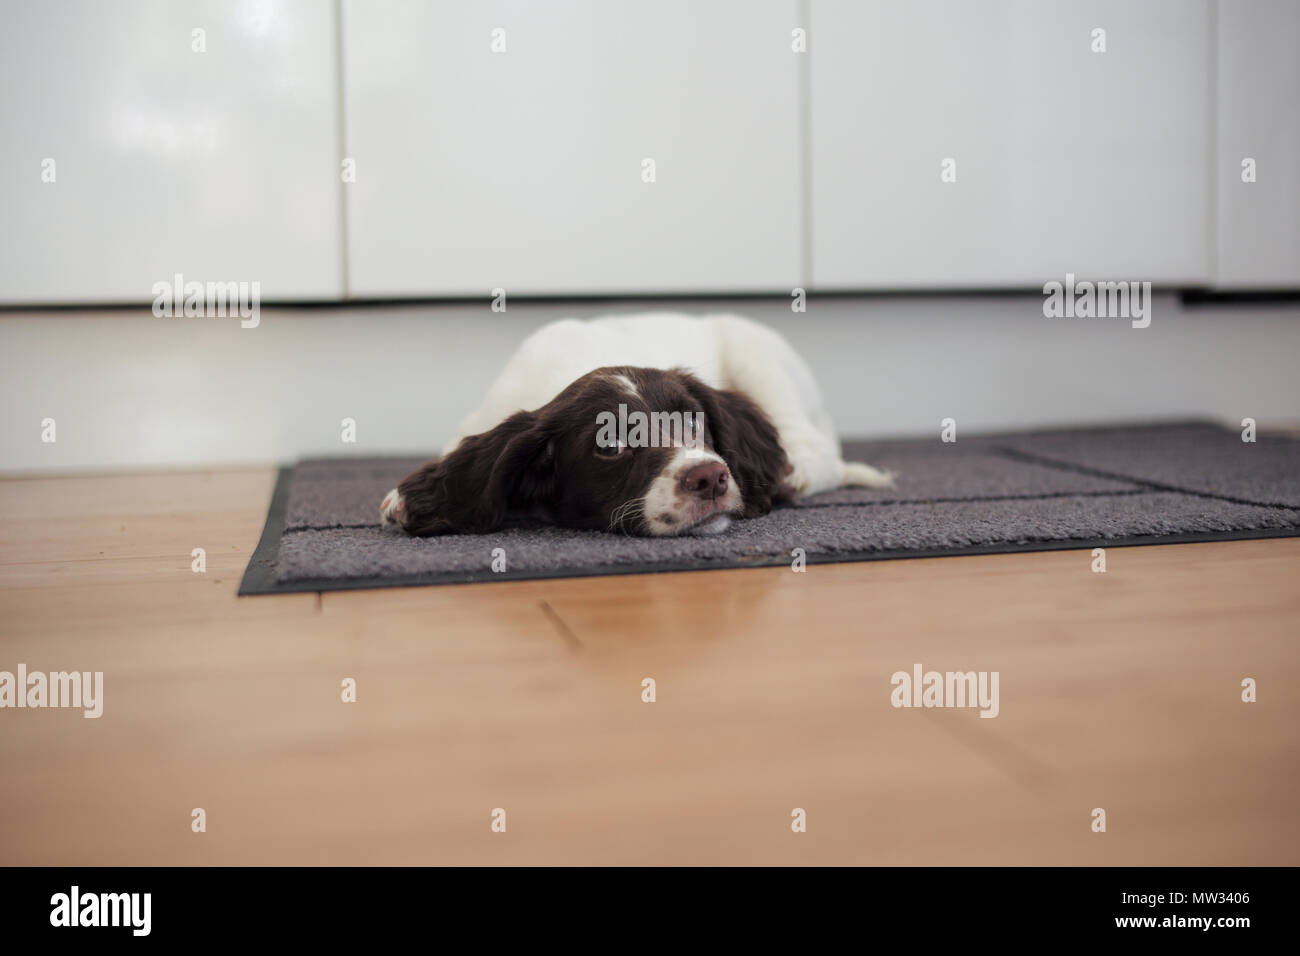 Un chiot épagneul Springer anglais jette par terre sur un tapis de cuisine dans une moue. Banque D'Images